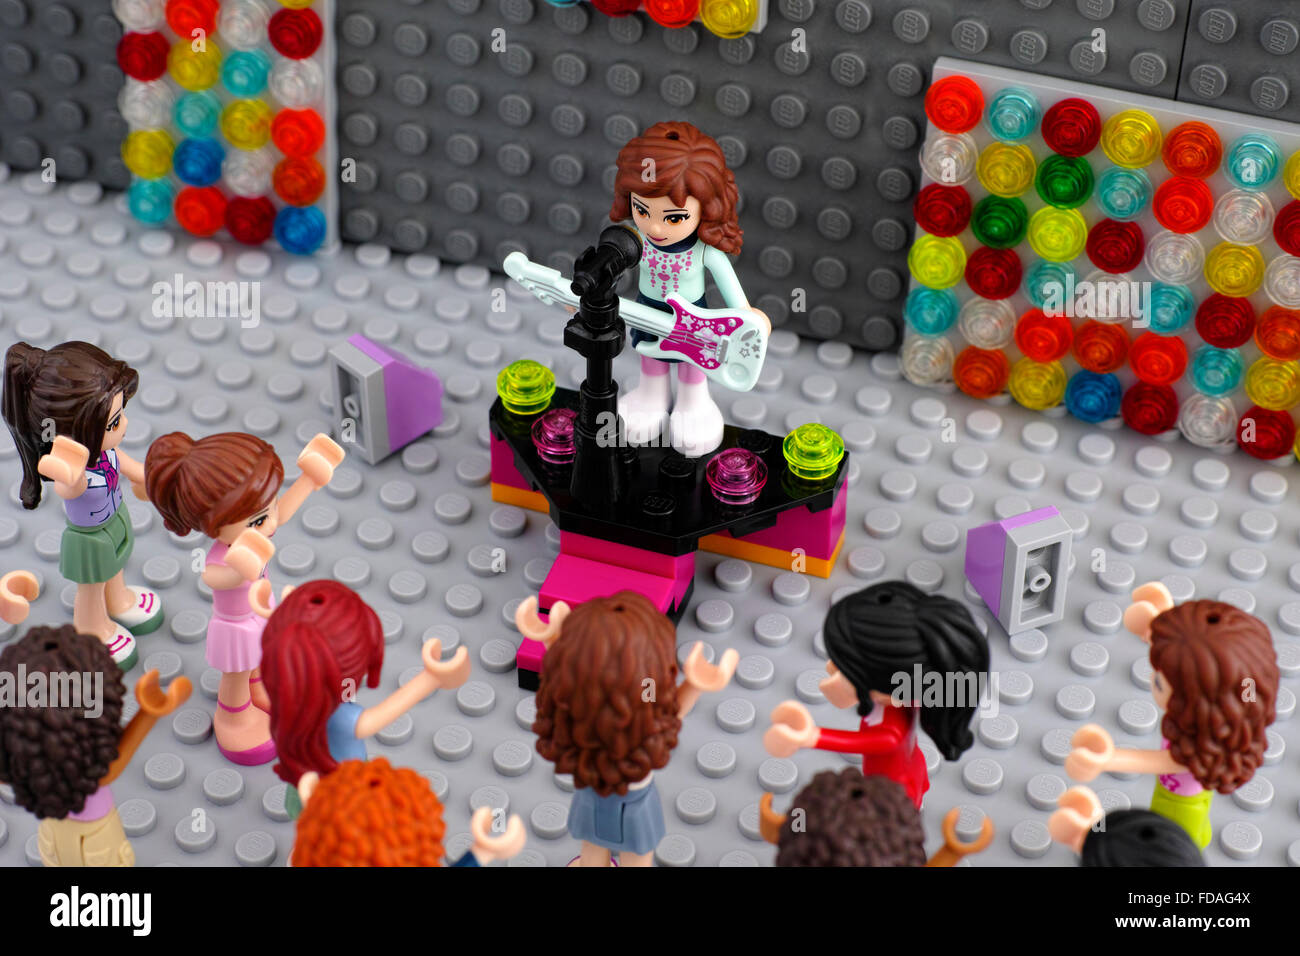 Les concerts de lego avec le musicien et le public. Fille d'amis Lego playmobil - 5116 - moto avec guitare électrique sur la scène avec microphone. Banque D'Images